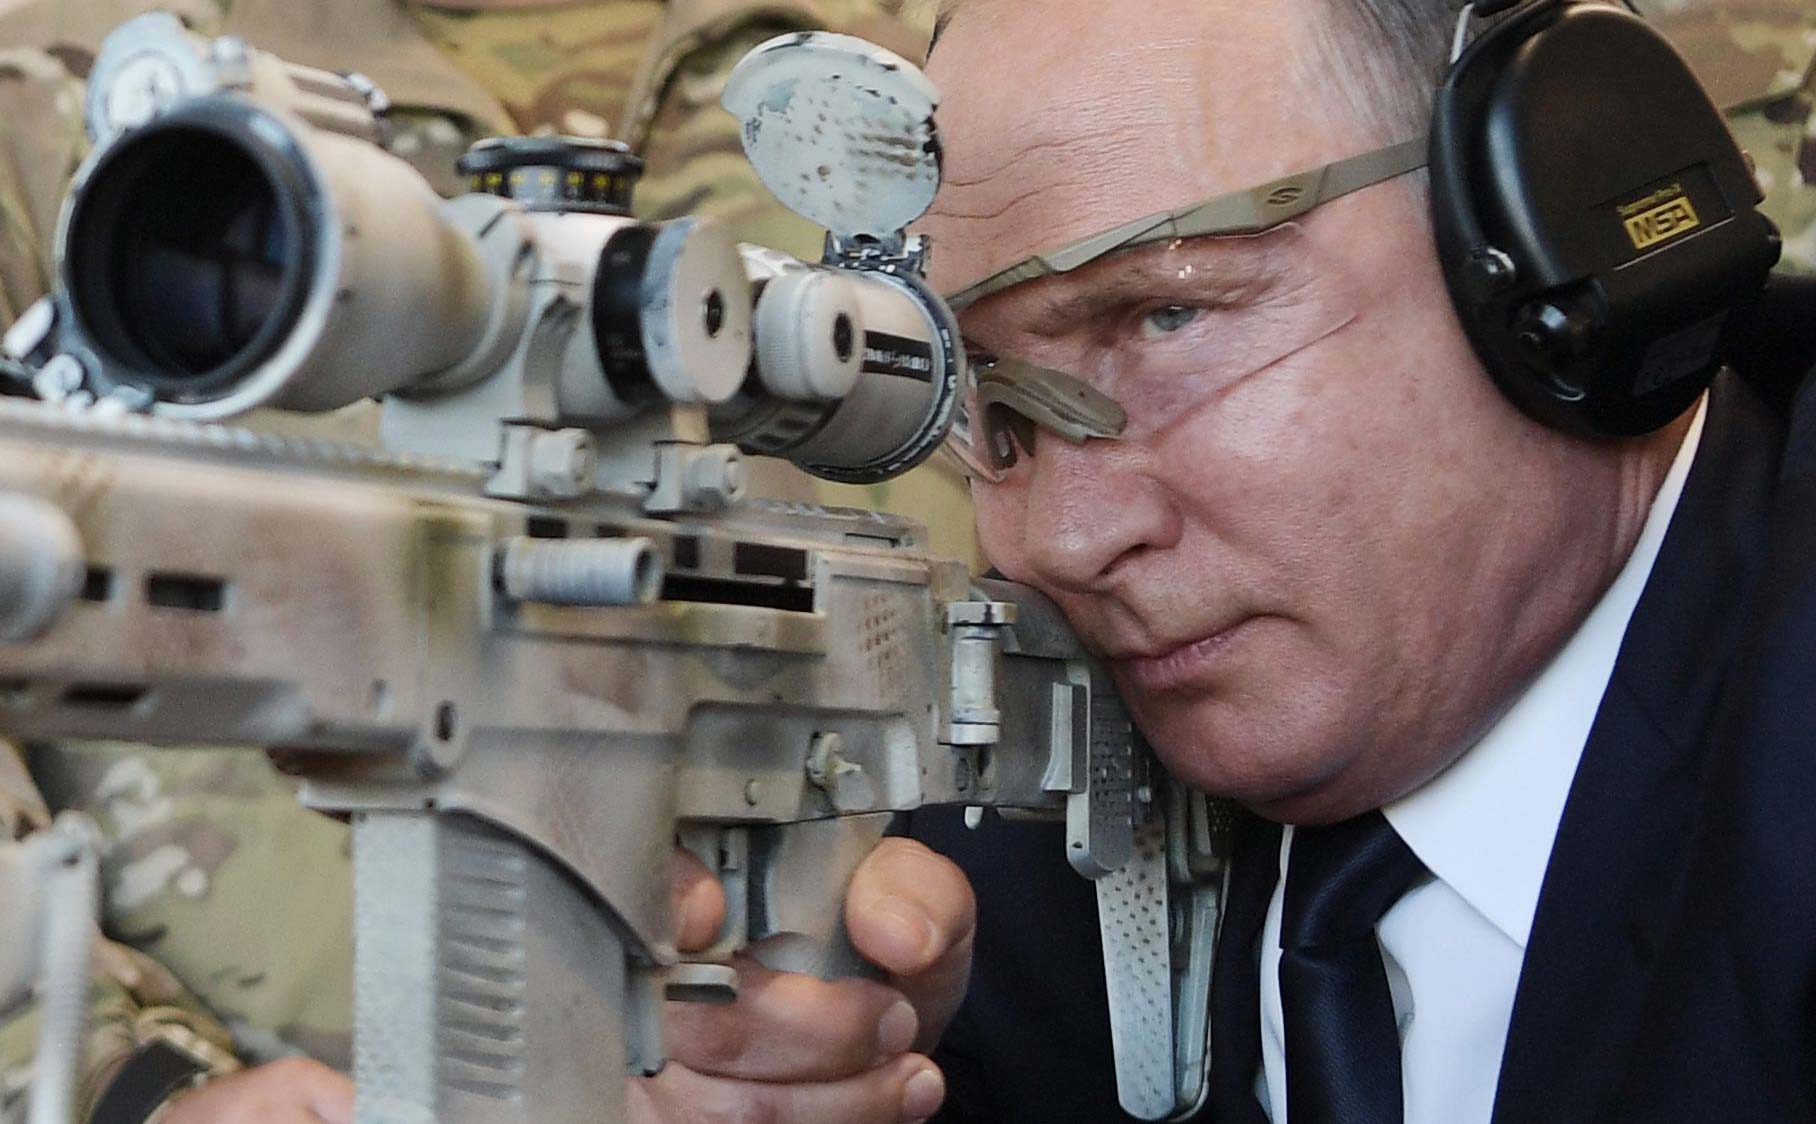 Chukavin: cây súng bắn tỉa thế hệ mới của quân đội Nga (có clip bắn thử)